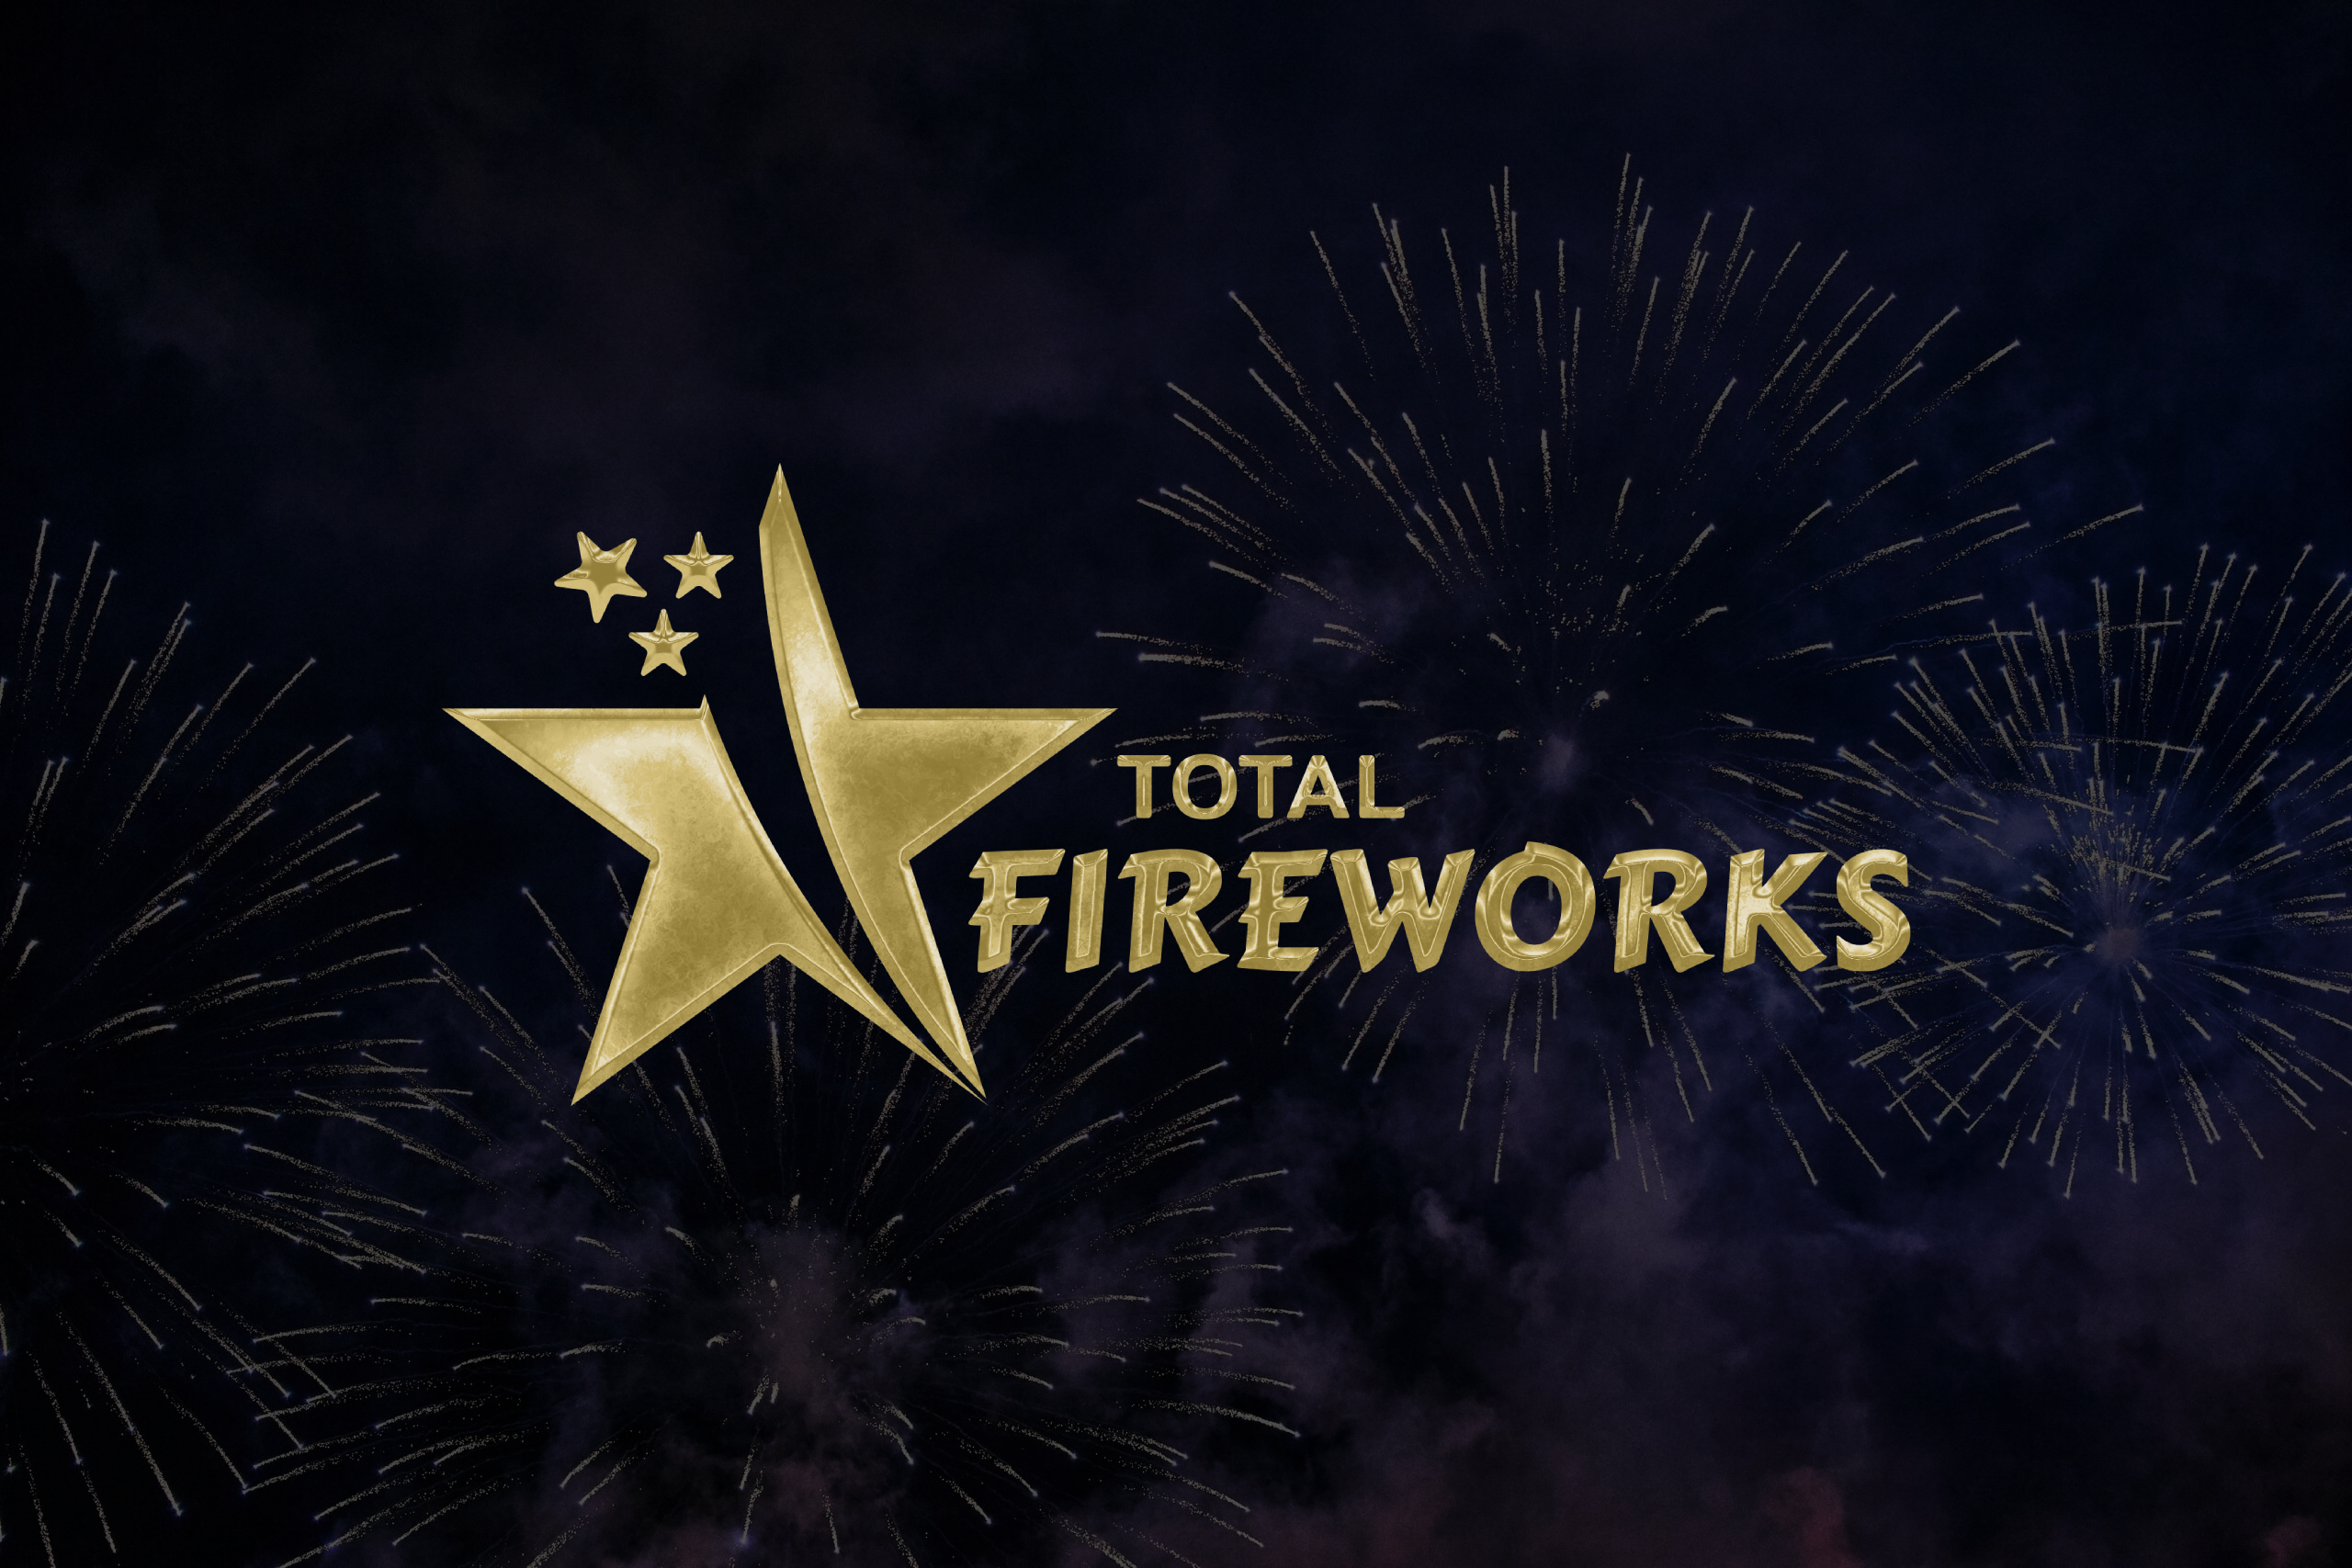 (c) Total-fireworks.co.uk